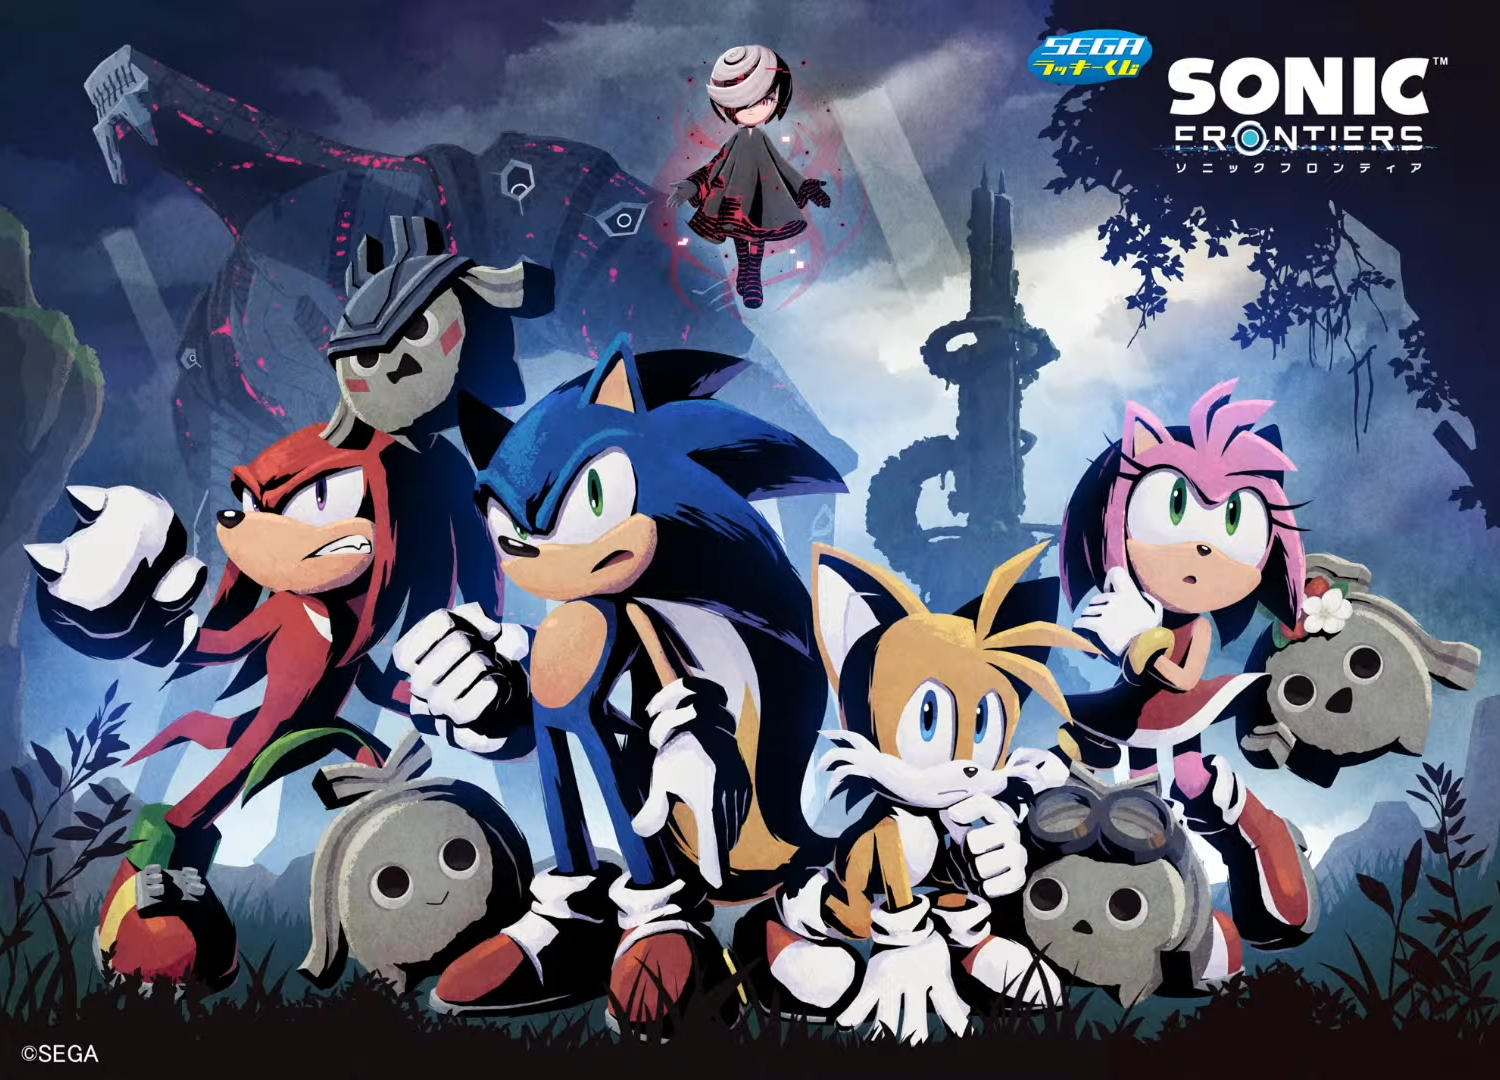 Sonic Frontiers Metacritic User Score Highest In The Series